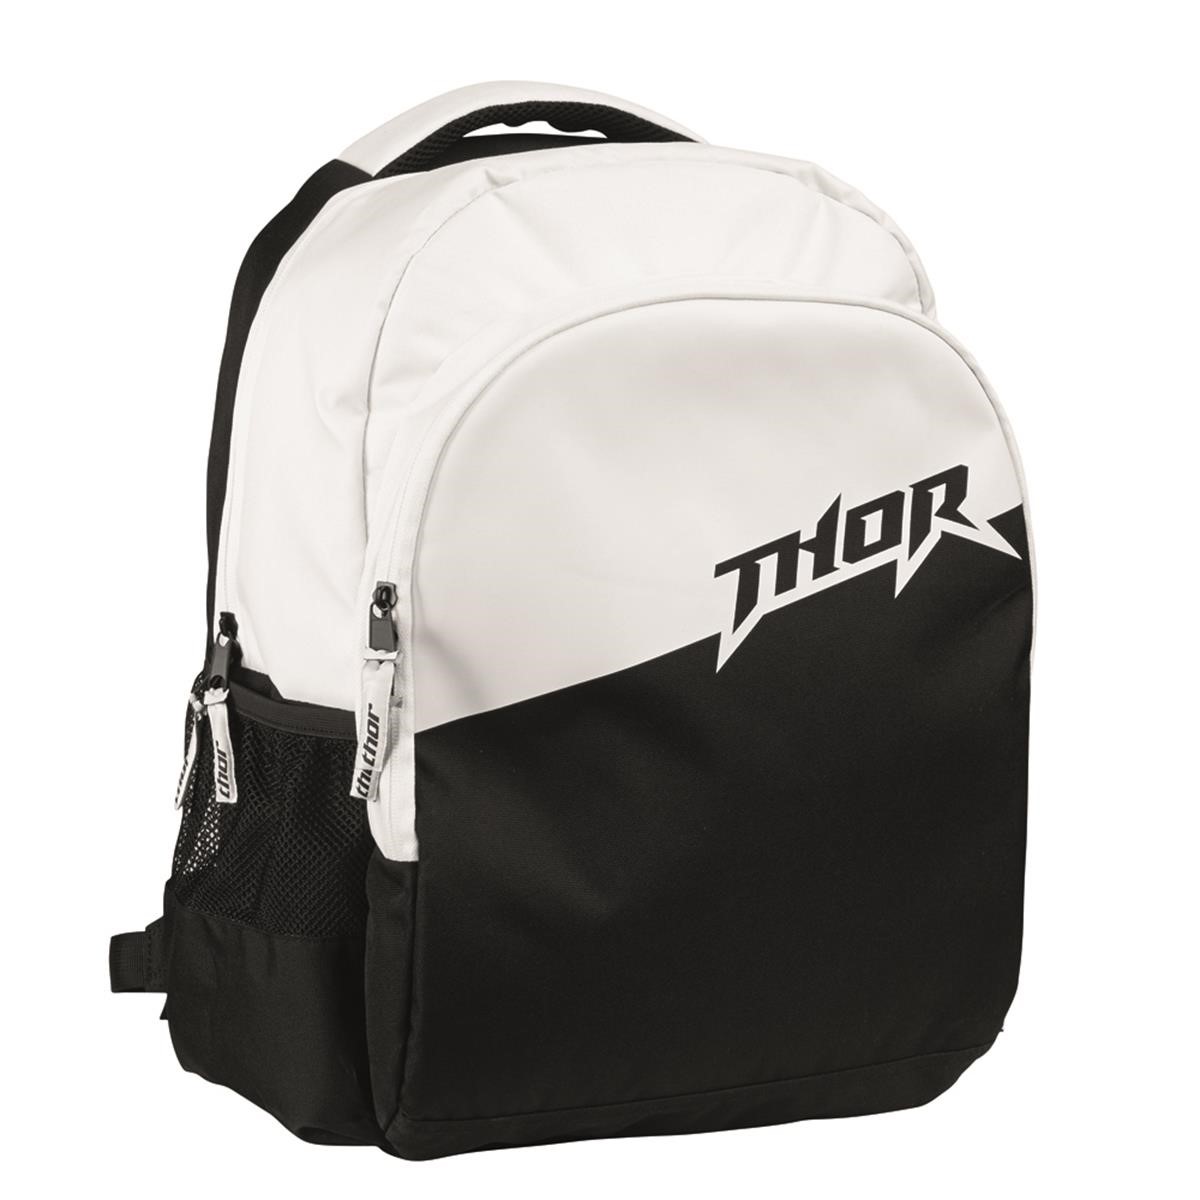 Thor Backpack Slam Black/White